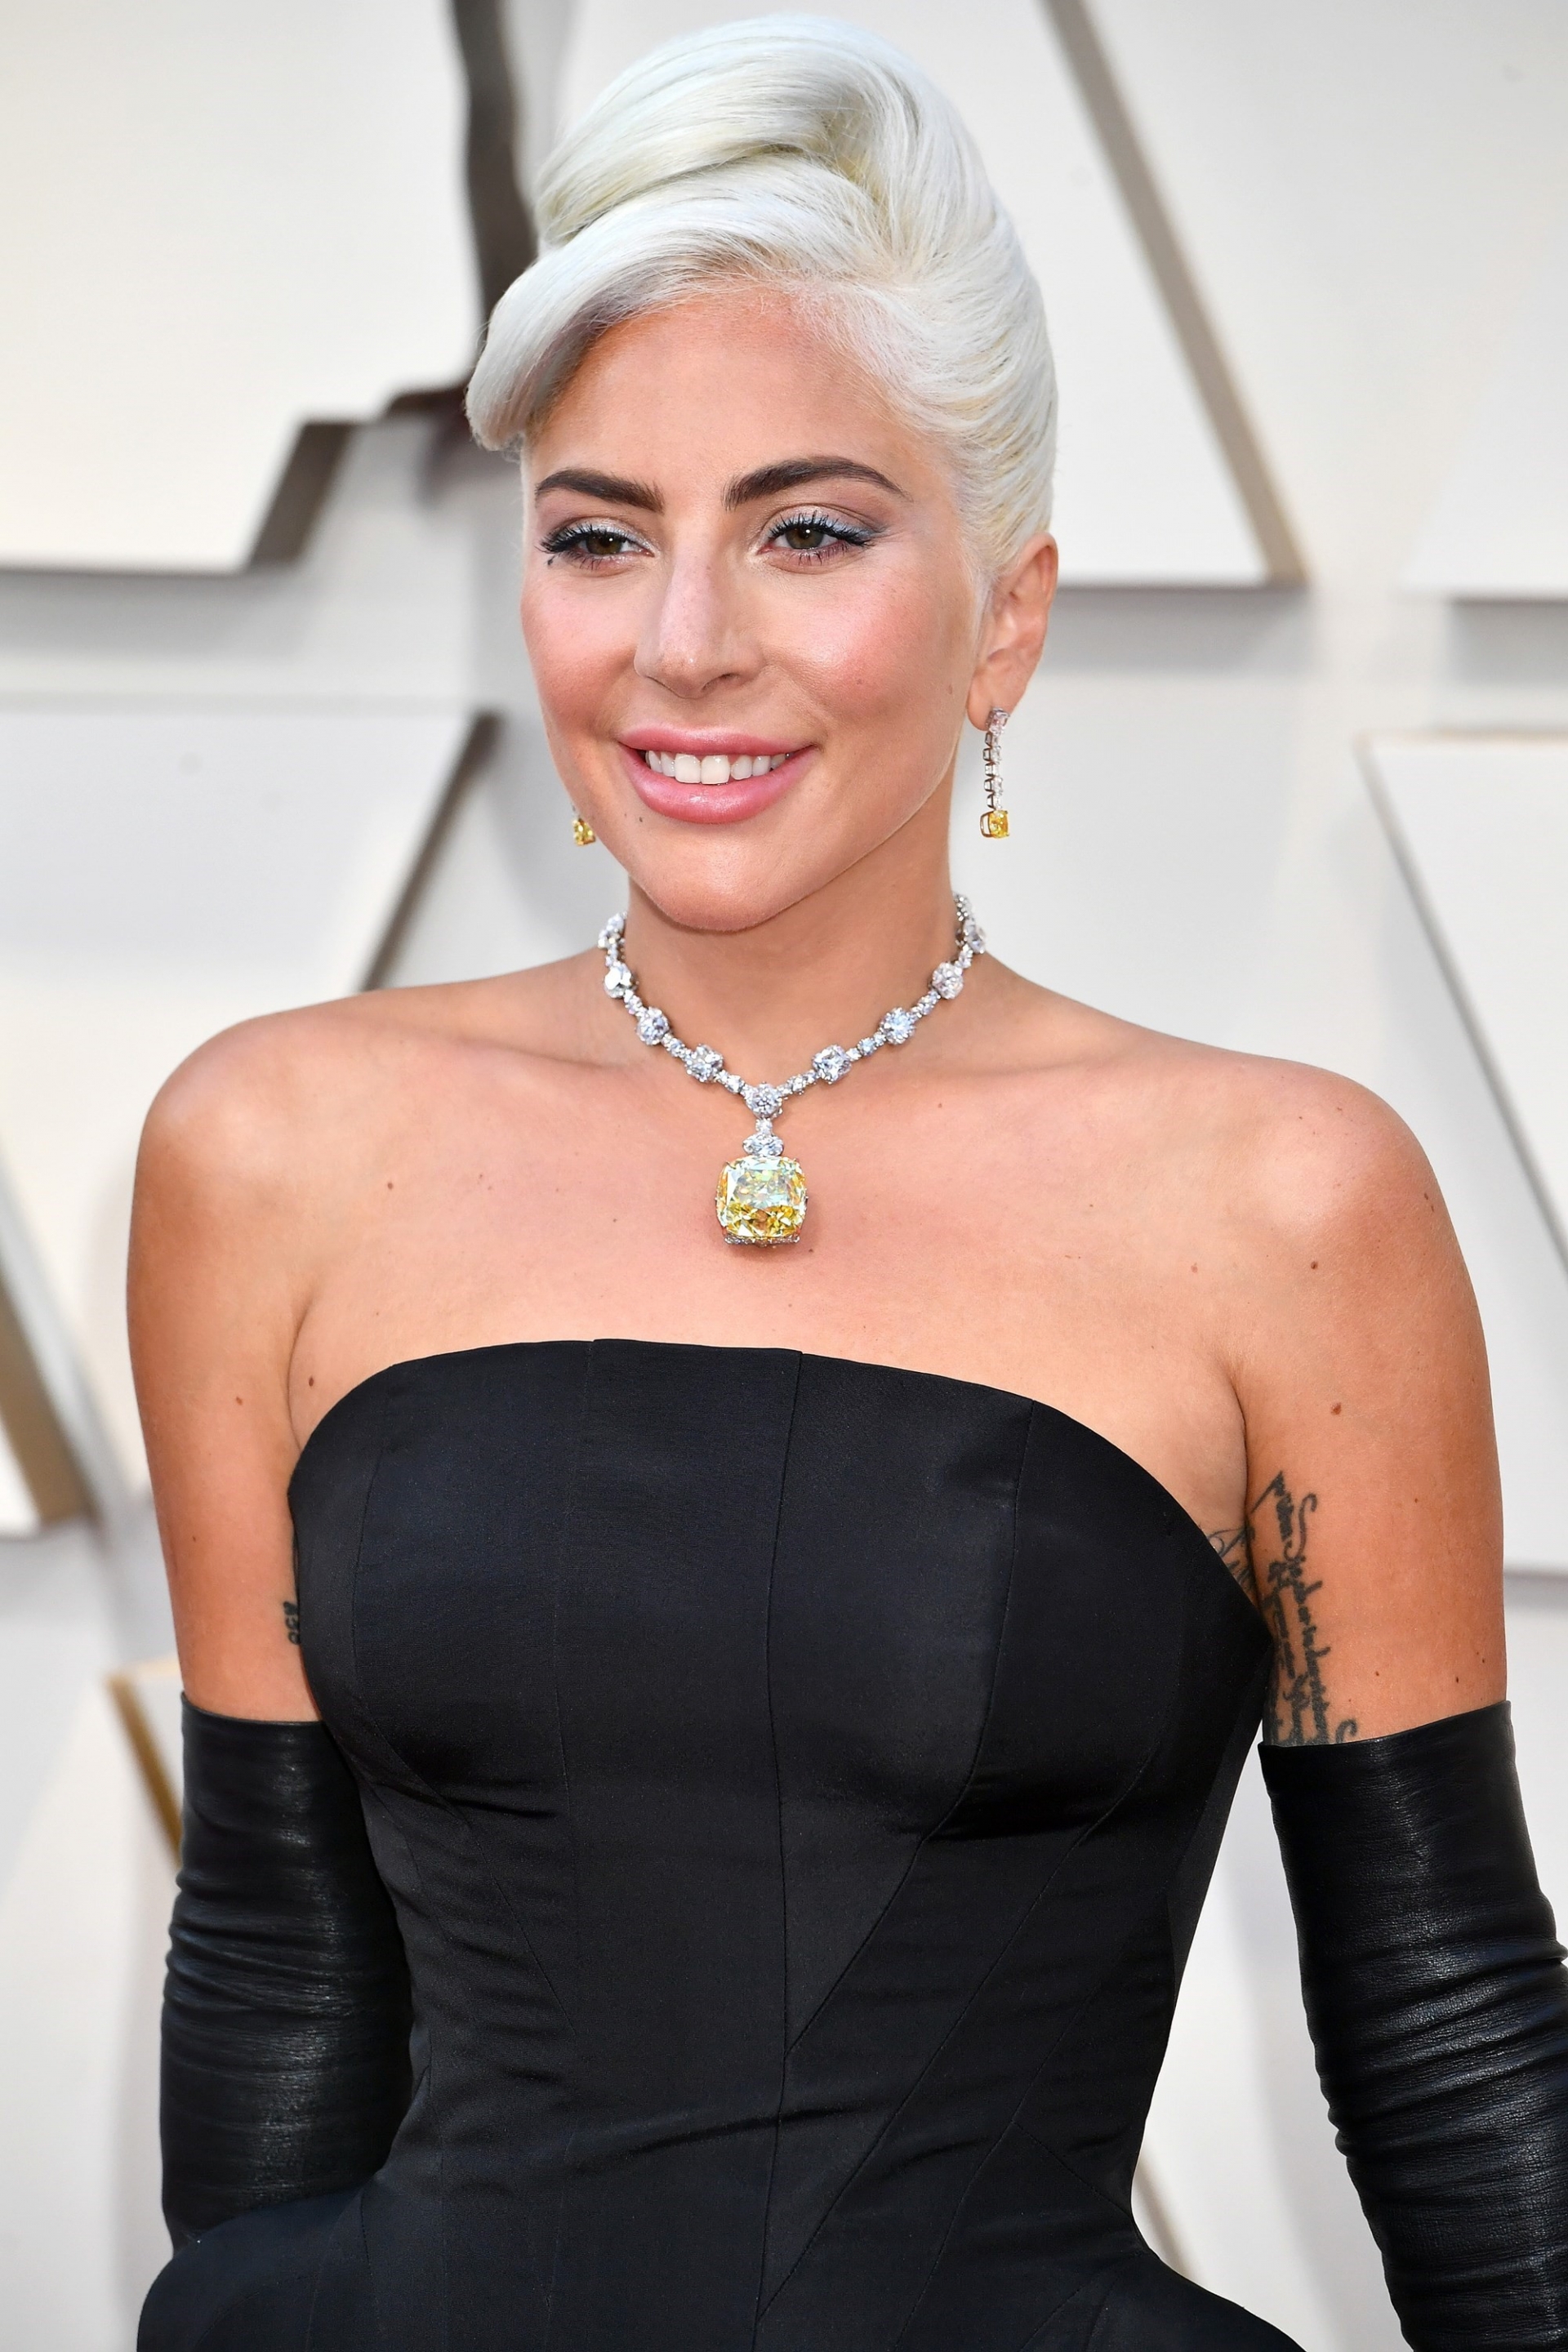 Tại lễ trao giải Oscar 2019, Lady Gaga đã trở thành tâm điểm khi cô đeo chiếc vòng kim cương của Tiffany&Co. Nữ ca sĩ từng nói rằng cô không dám thở khi đeo món trang sức quý giá này và các nhân viên bảo vệ của Tiffany&Co đã phải bám sát cô nàng cho đến tận lúc về.